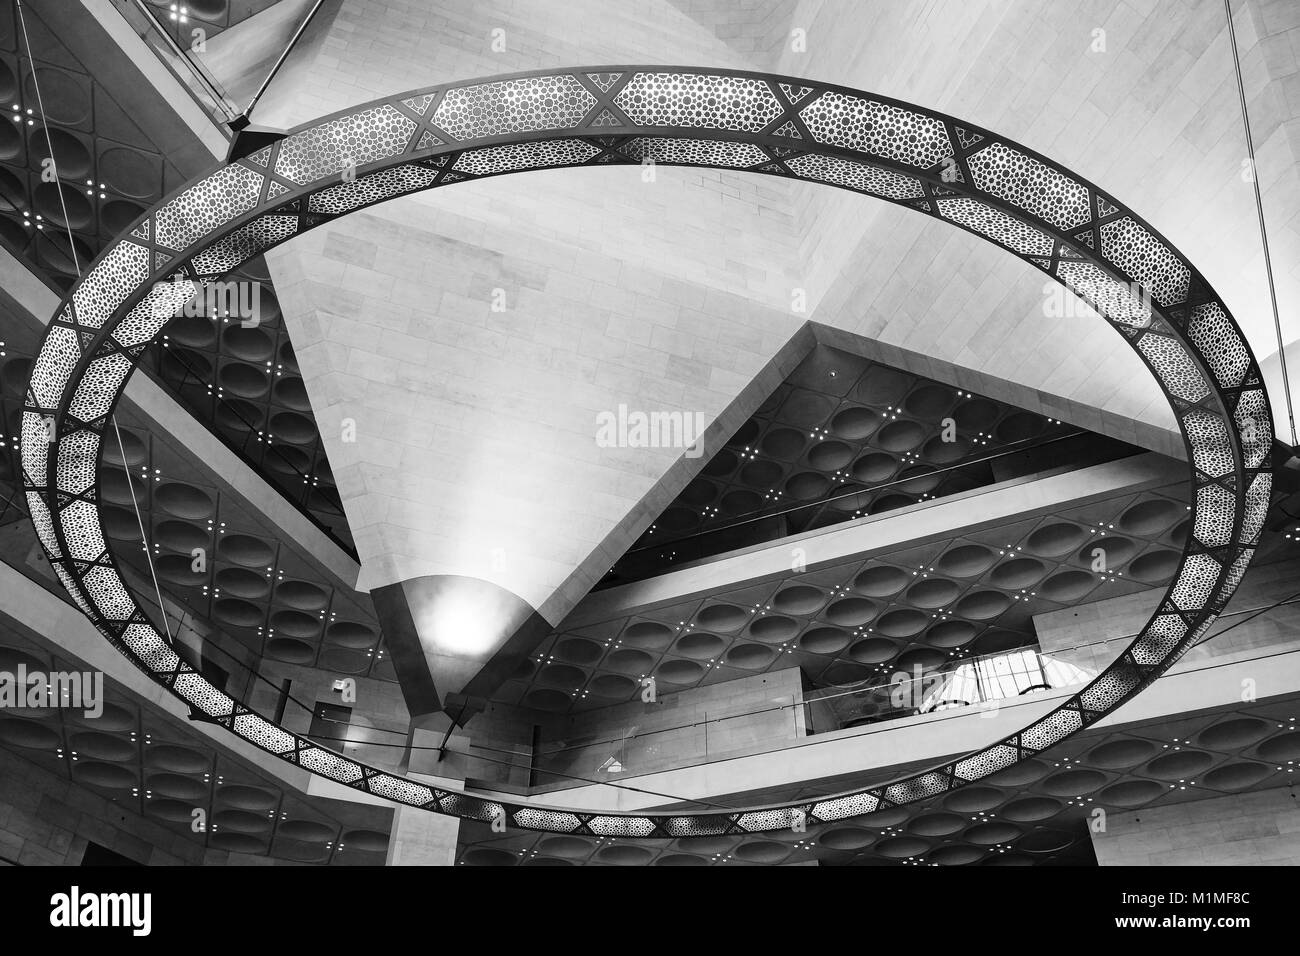 Schönes Design des Museum für Islamische Kunst im Jahr 2008 von einem Architekten I.M.Pei, Doha, Katar gebaut. Große Sammlung von Meisterwerken der arabischen Kultur Stockfoto